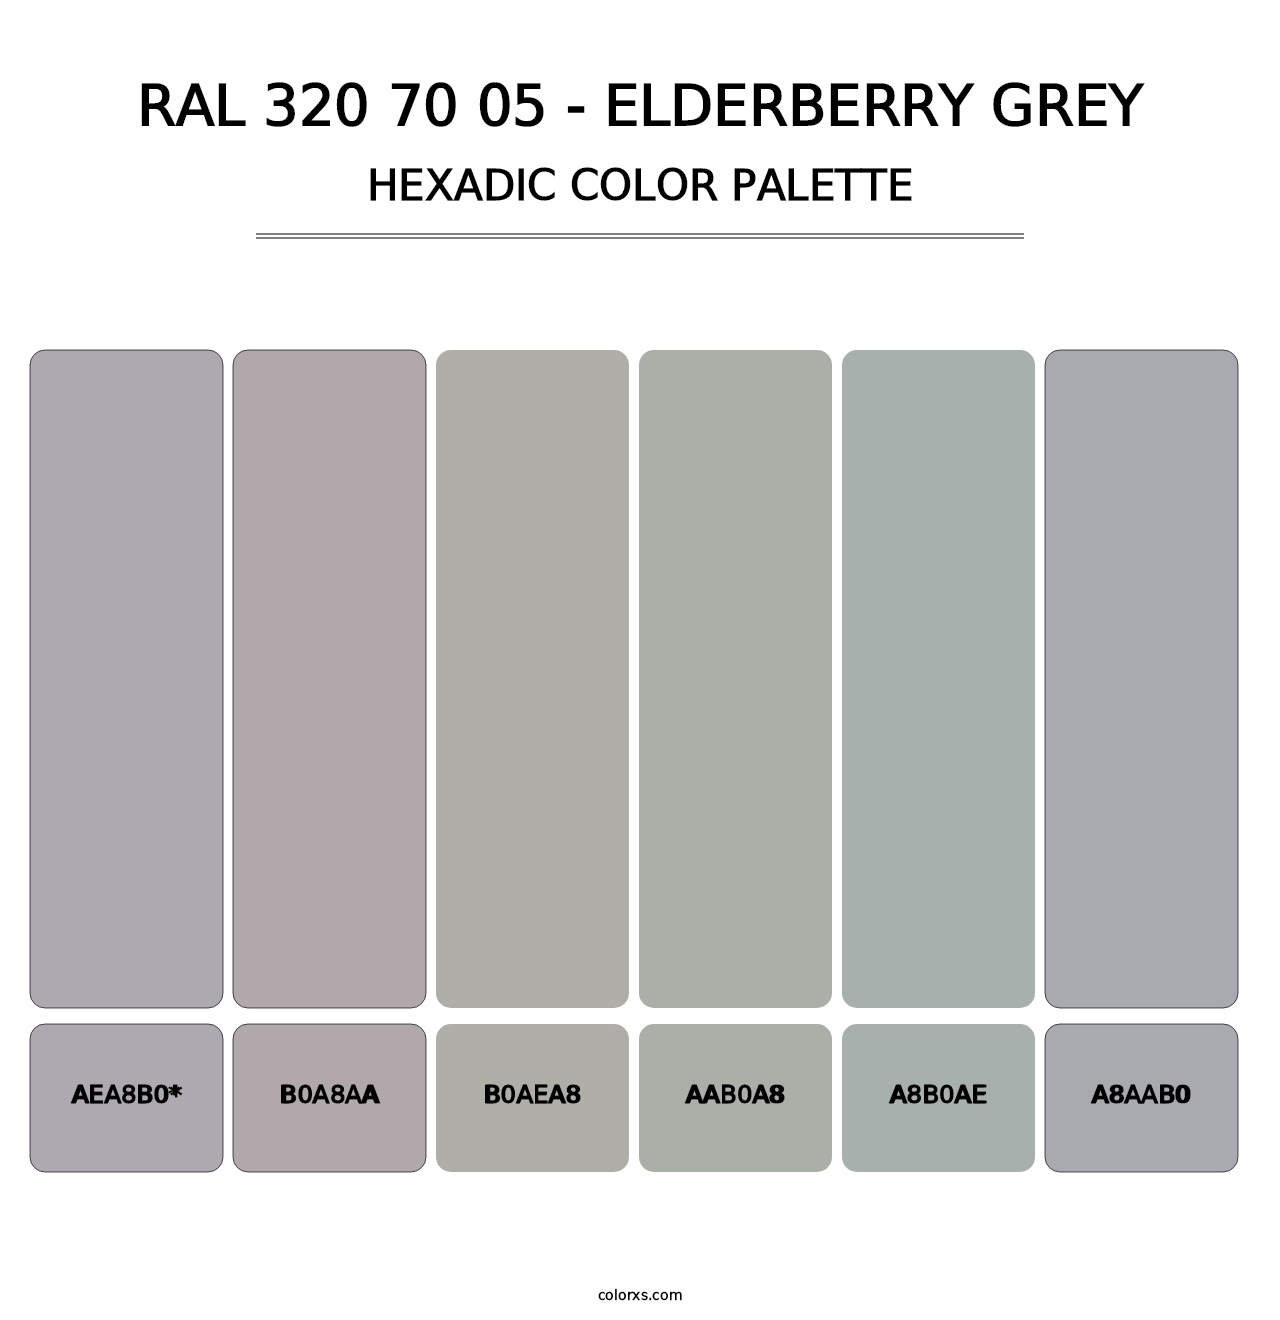 RAL 320 70 05 - Elderberry Grey - Hexadic Color Palette